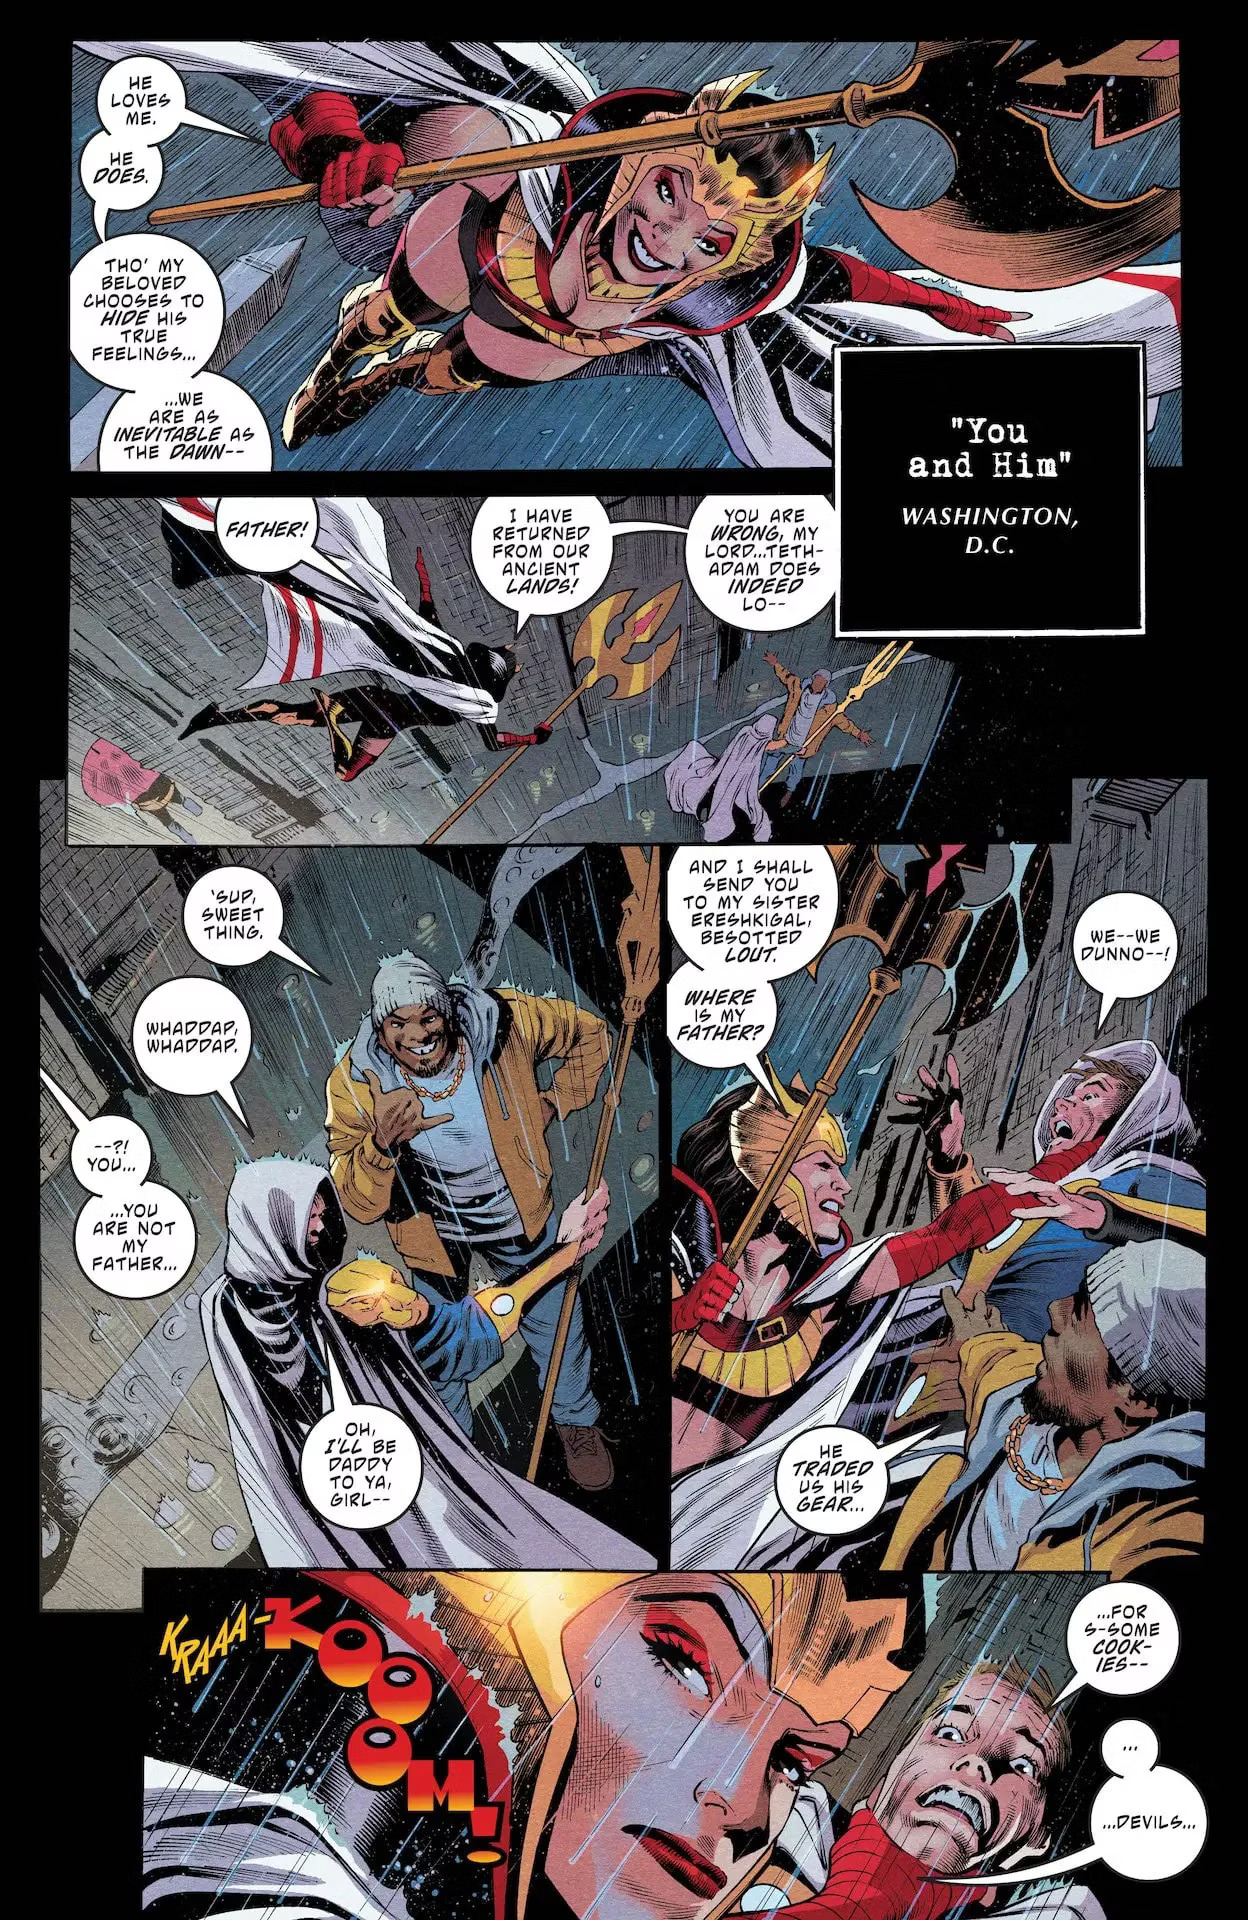 صفحة داخلية من Black Adam #12.